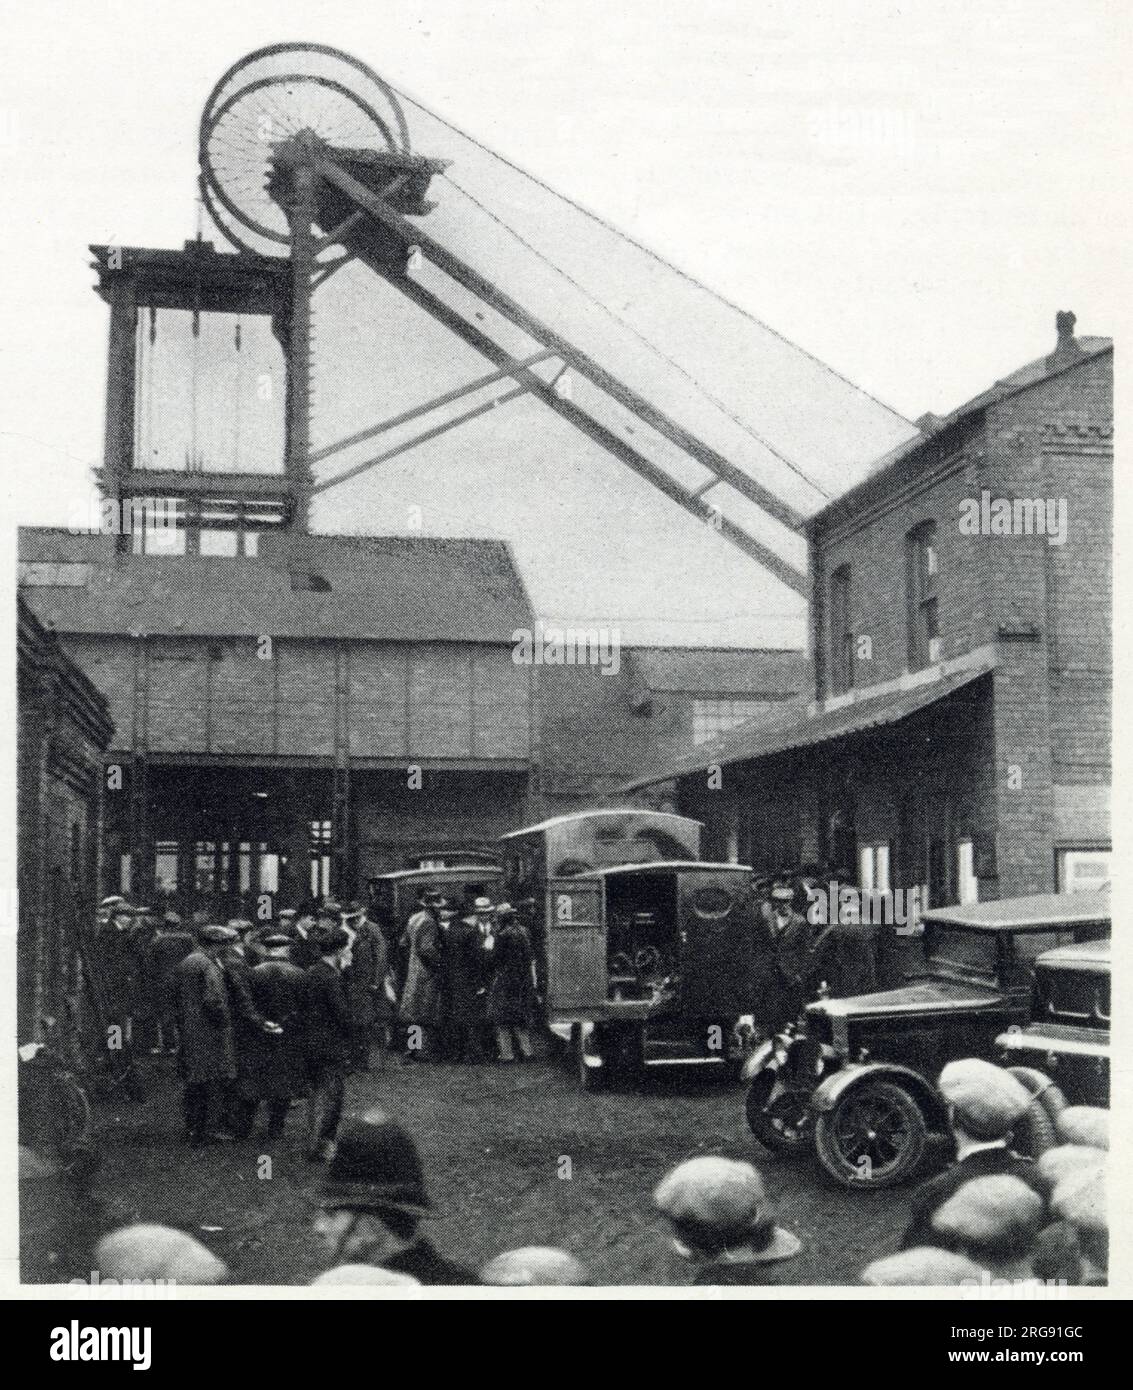 Bickershaw Colliery in Lancashire, wo sich am 10. Oktober 1932 eine Kohlebergwerkskatastrophe ereignete. Ein Aufzug mit 20 Leuten fiel auf die Mine und tötete alle bis auf eine Person. Szene am Boxenkopf nach der Explosion in der Mine, Gruppe ängstlicher Menschen, mit Krankenwagen in Bereitschaft. Stockfoto